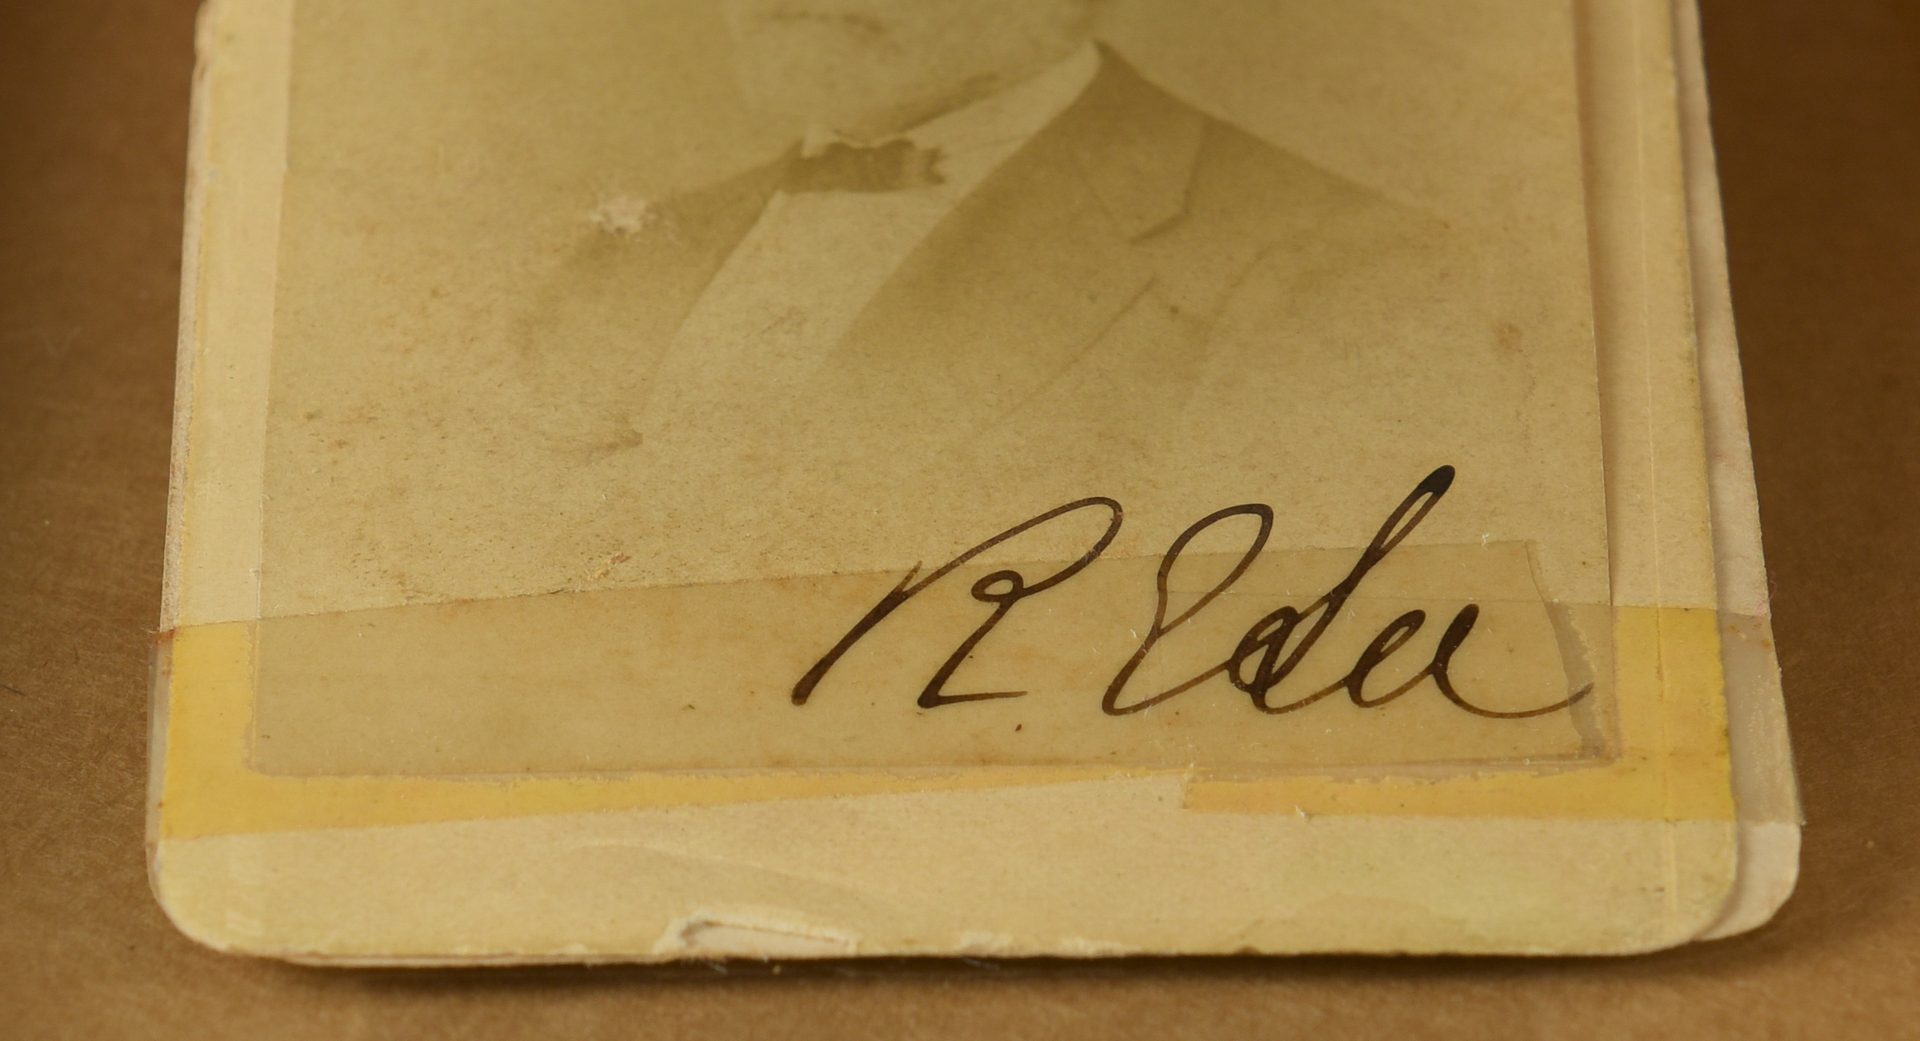 Lot 218: Robert E. Lee signed CDV, Lexington